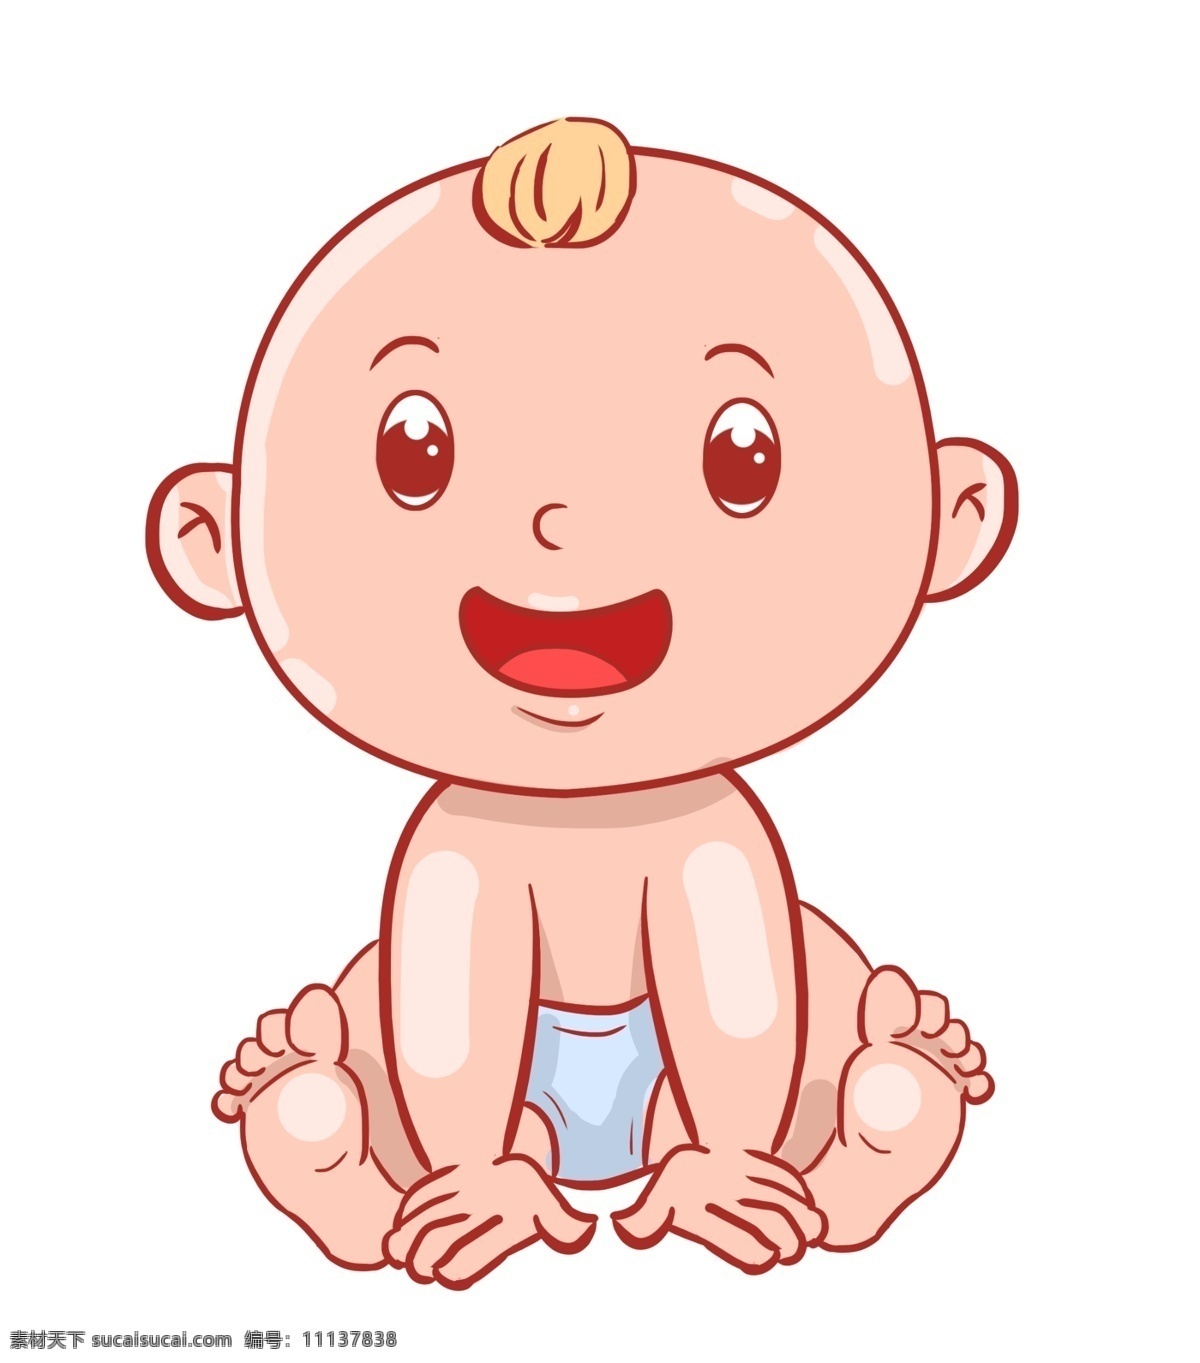 坐 婴儿 装饰 插画 坐着的婴儿 开心的婴儿 大笑的婴儿 微笑的婴儿 婴儿装饰 婴儿插画 卡通人物